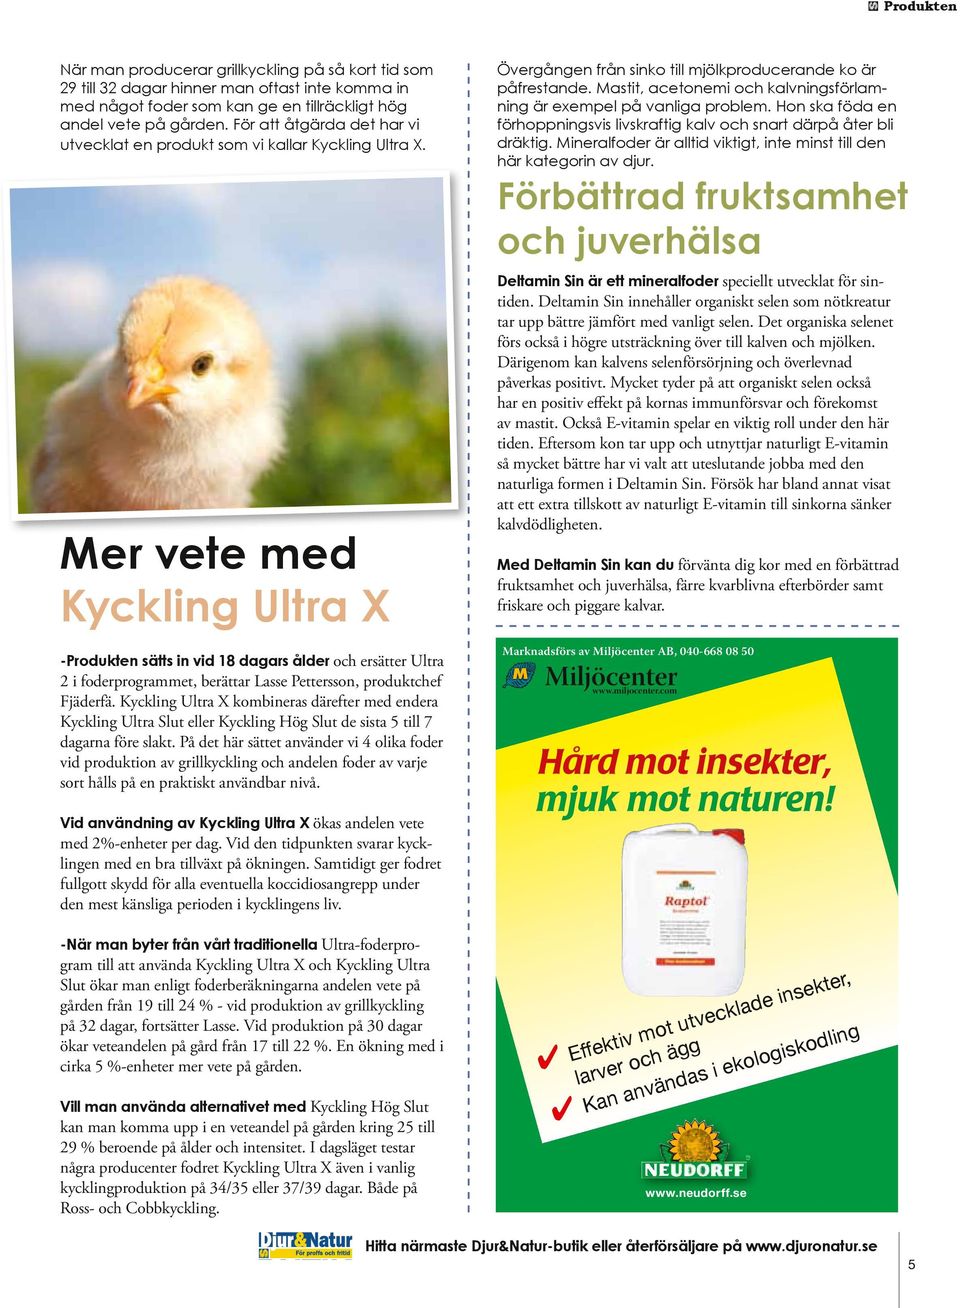 Mer vete med Kyckling Ultra X -Produkten sätts in vid 18 dagars ålder och ersätter Ultra 2 i foderprogrammet, berättar Lasse Pettersson, produktchef Fjäderfä.